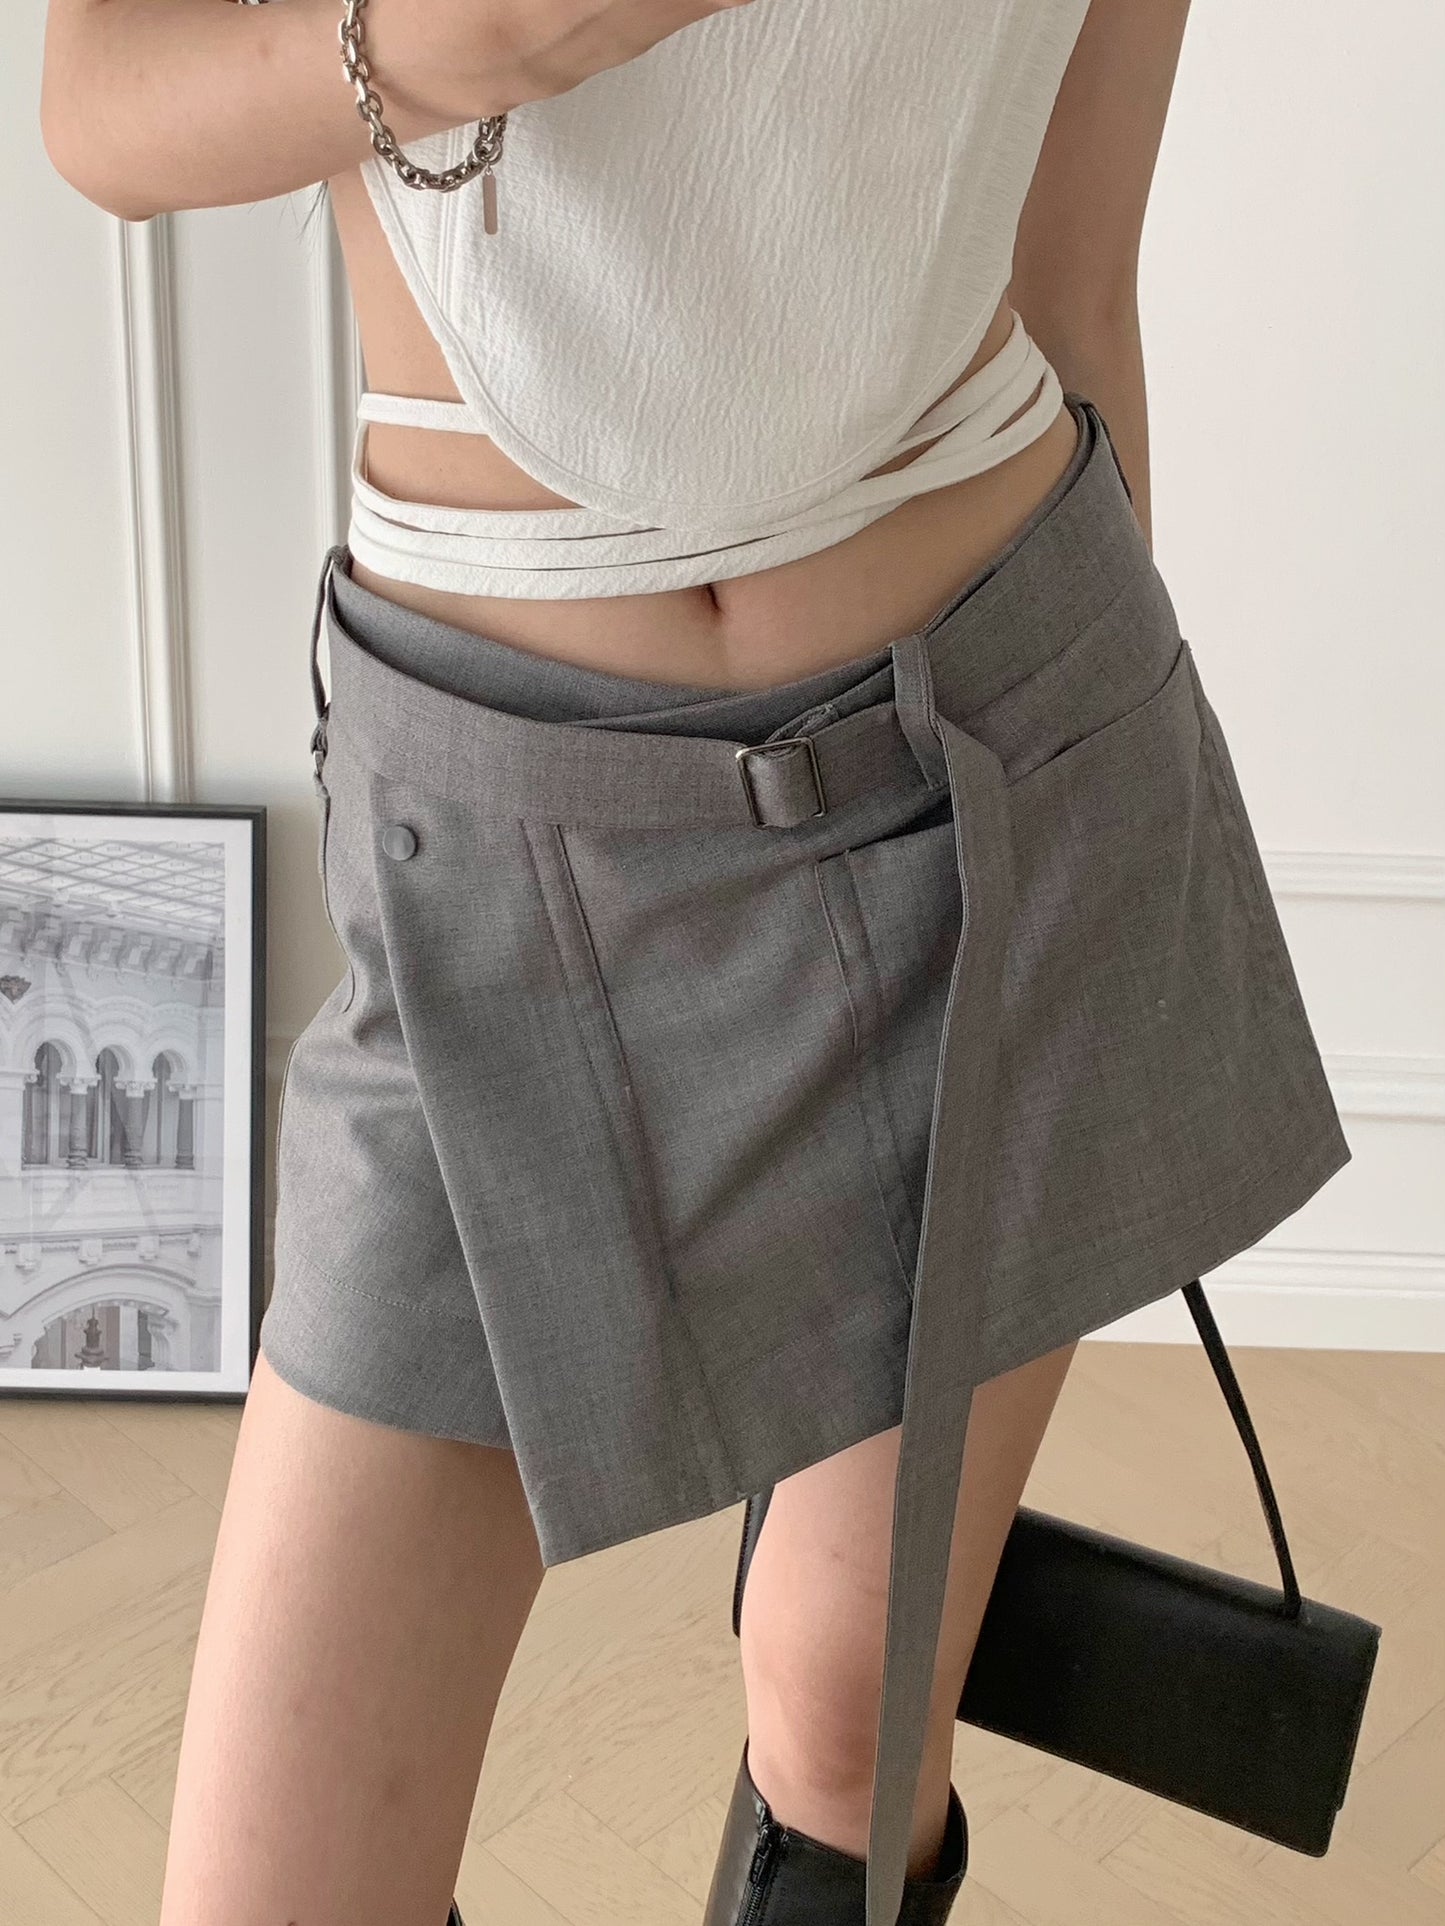 Pocket Mini Skirt